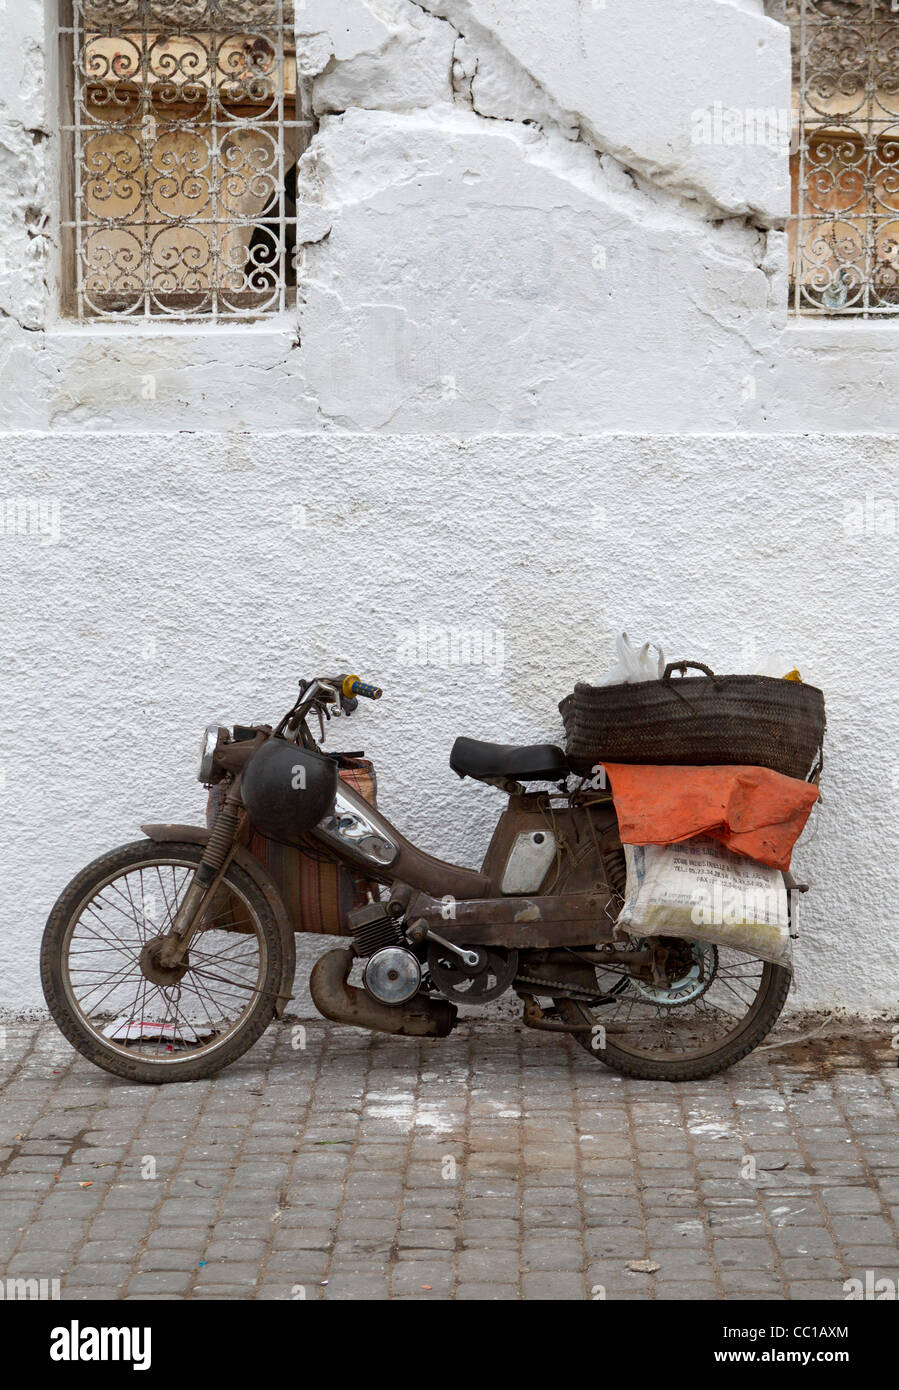 Antigua y en lugar de un solo cilindro oxidado motocicletas o ciclomotores apoyado contra una pared blanca en El Jadida, Marruecos Foto de stock